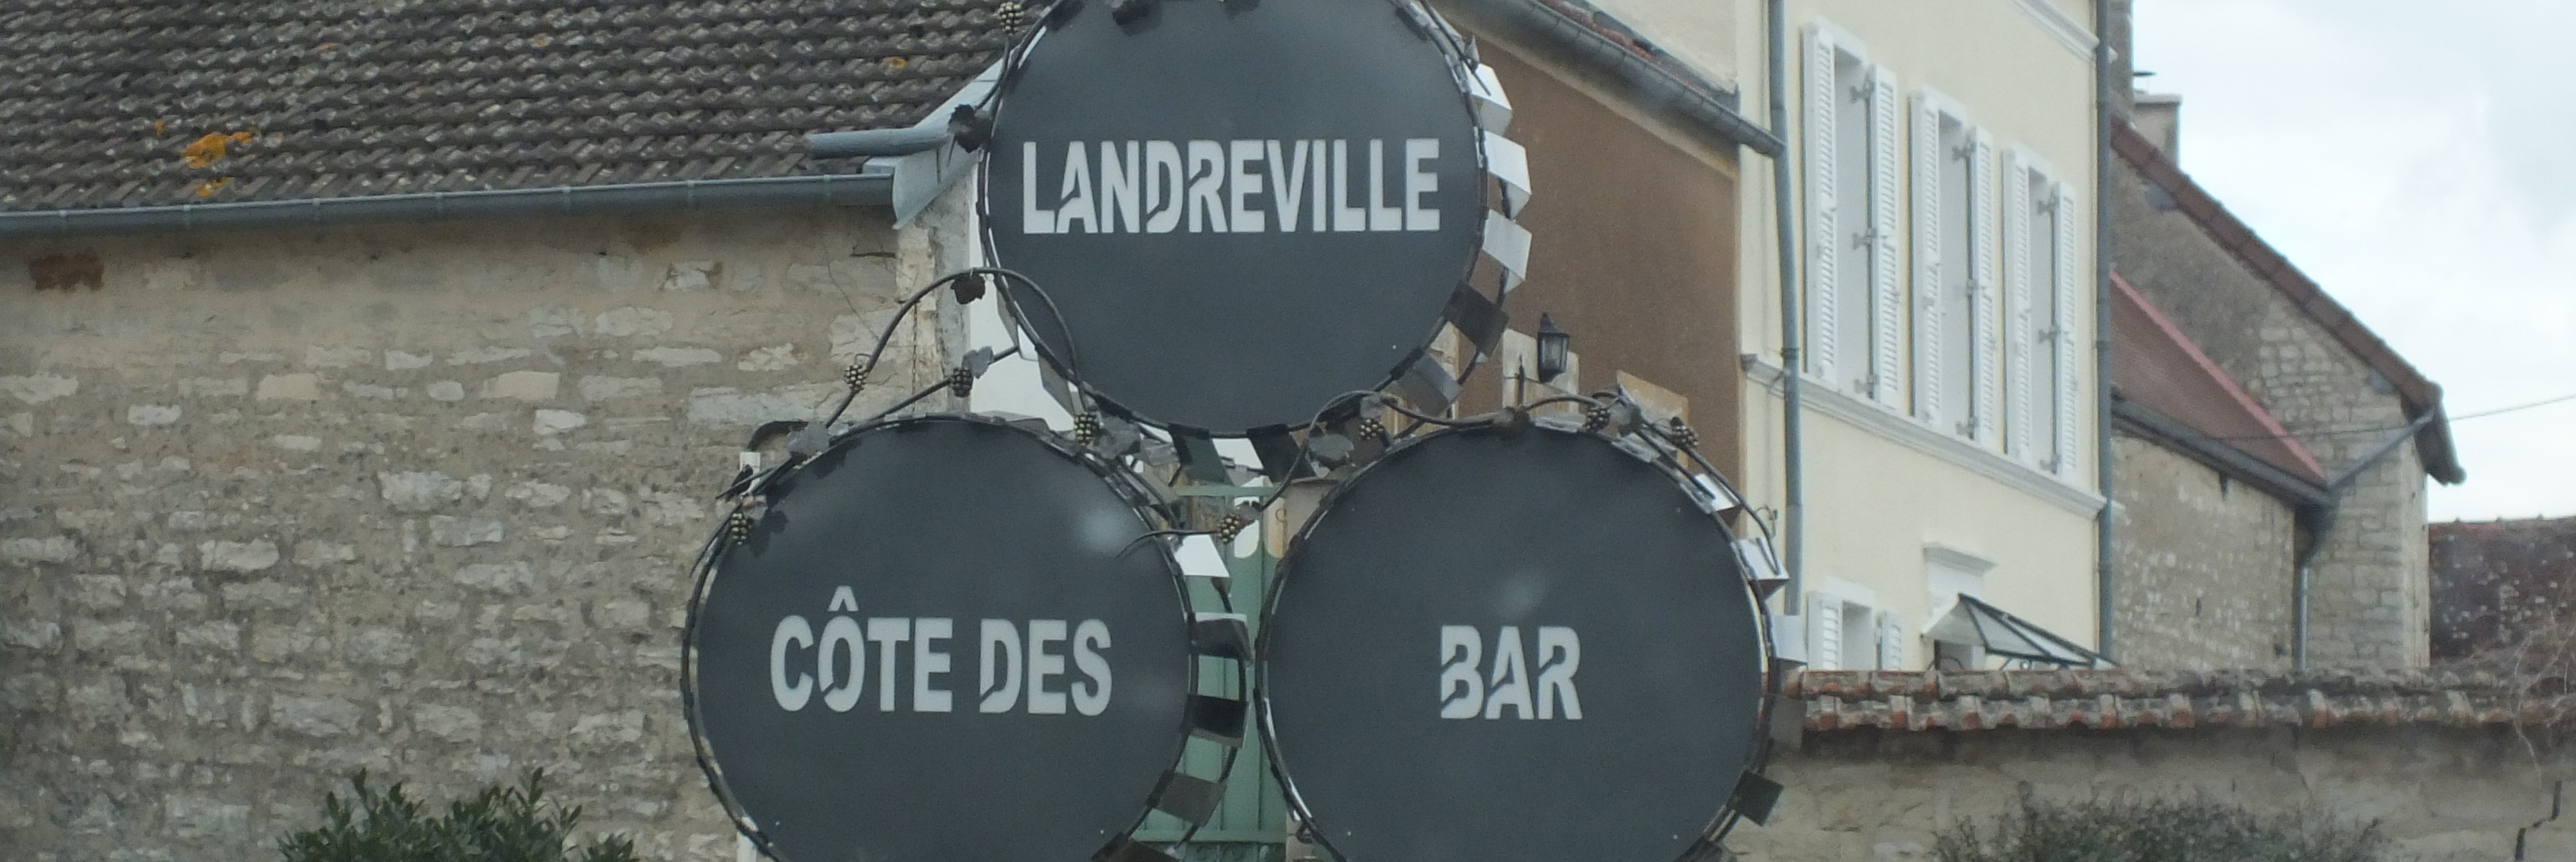 Banniere site Landreville patrimoine